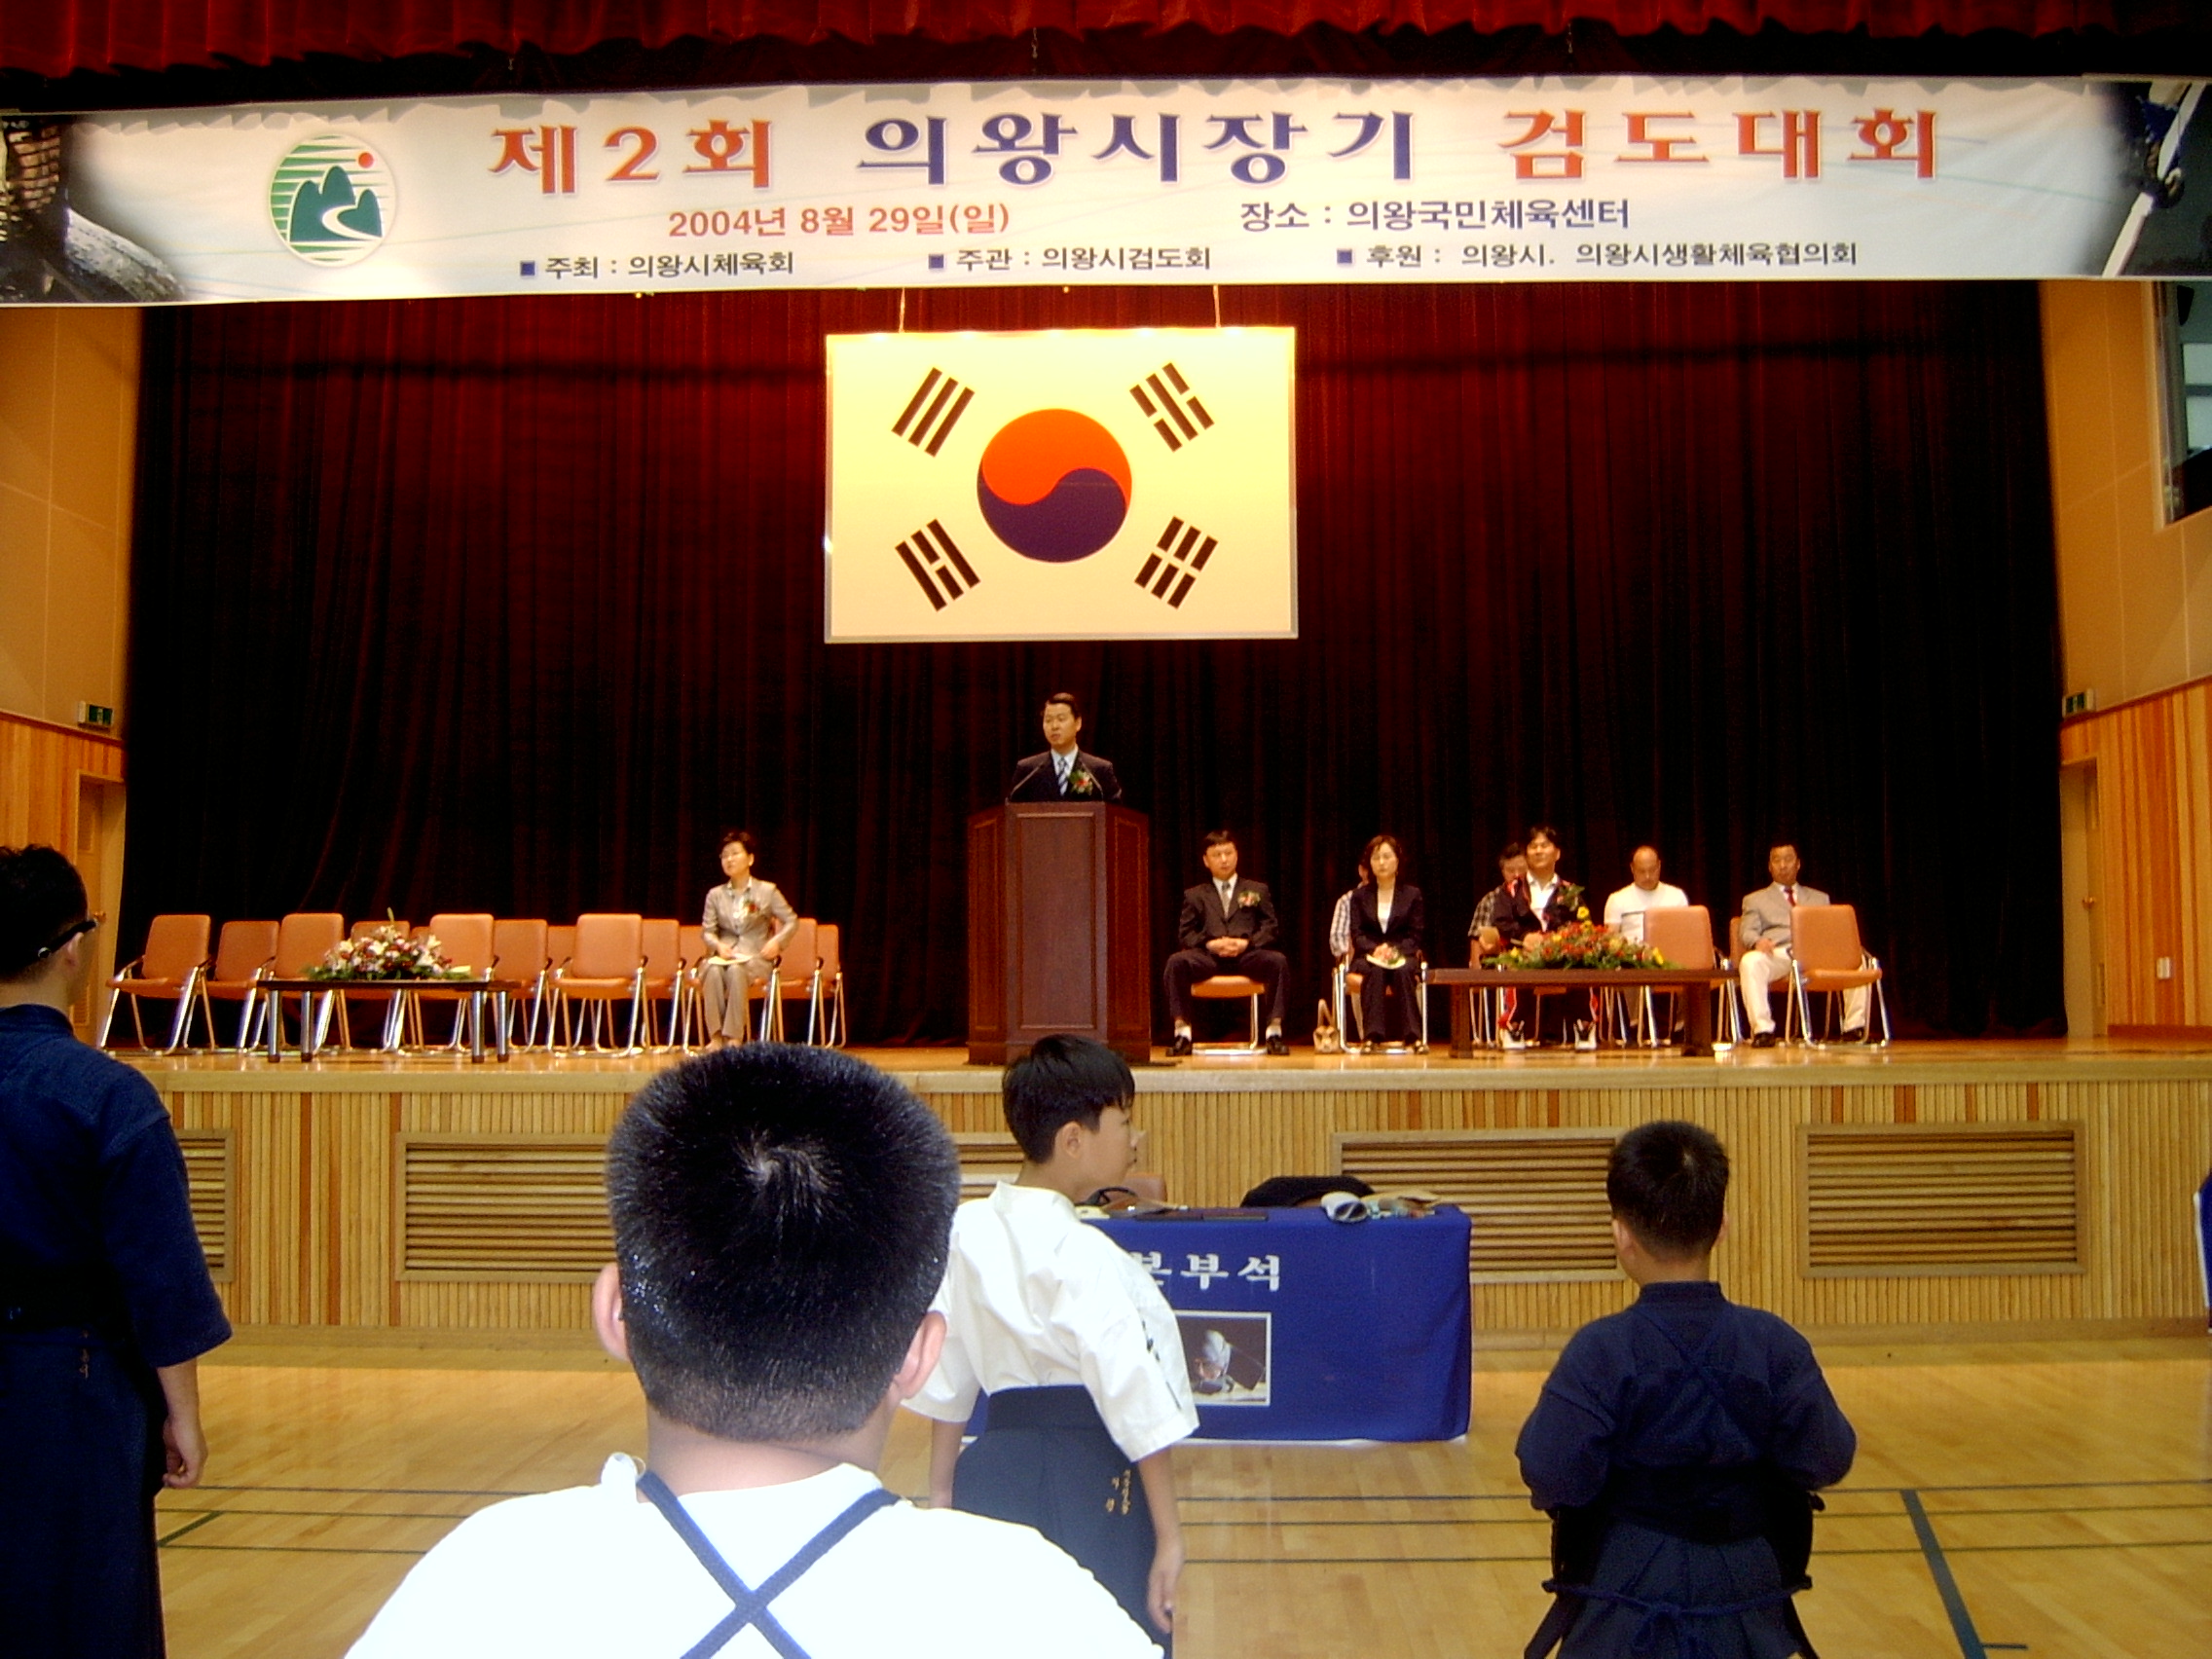 시장기 검도대회에 참석하여 축사를하고 있는  권오규 의장('04.8.29)